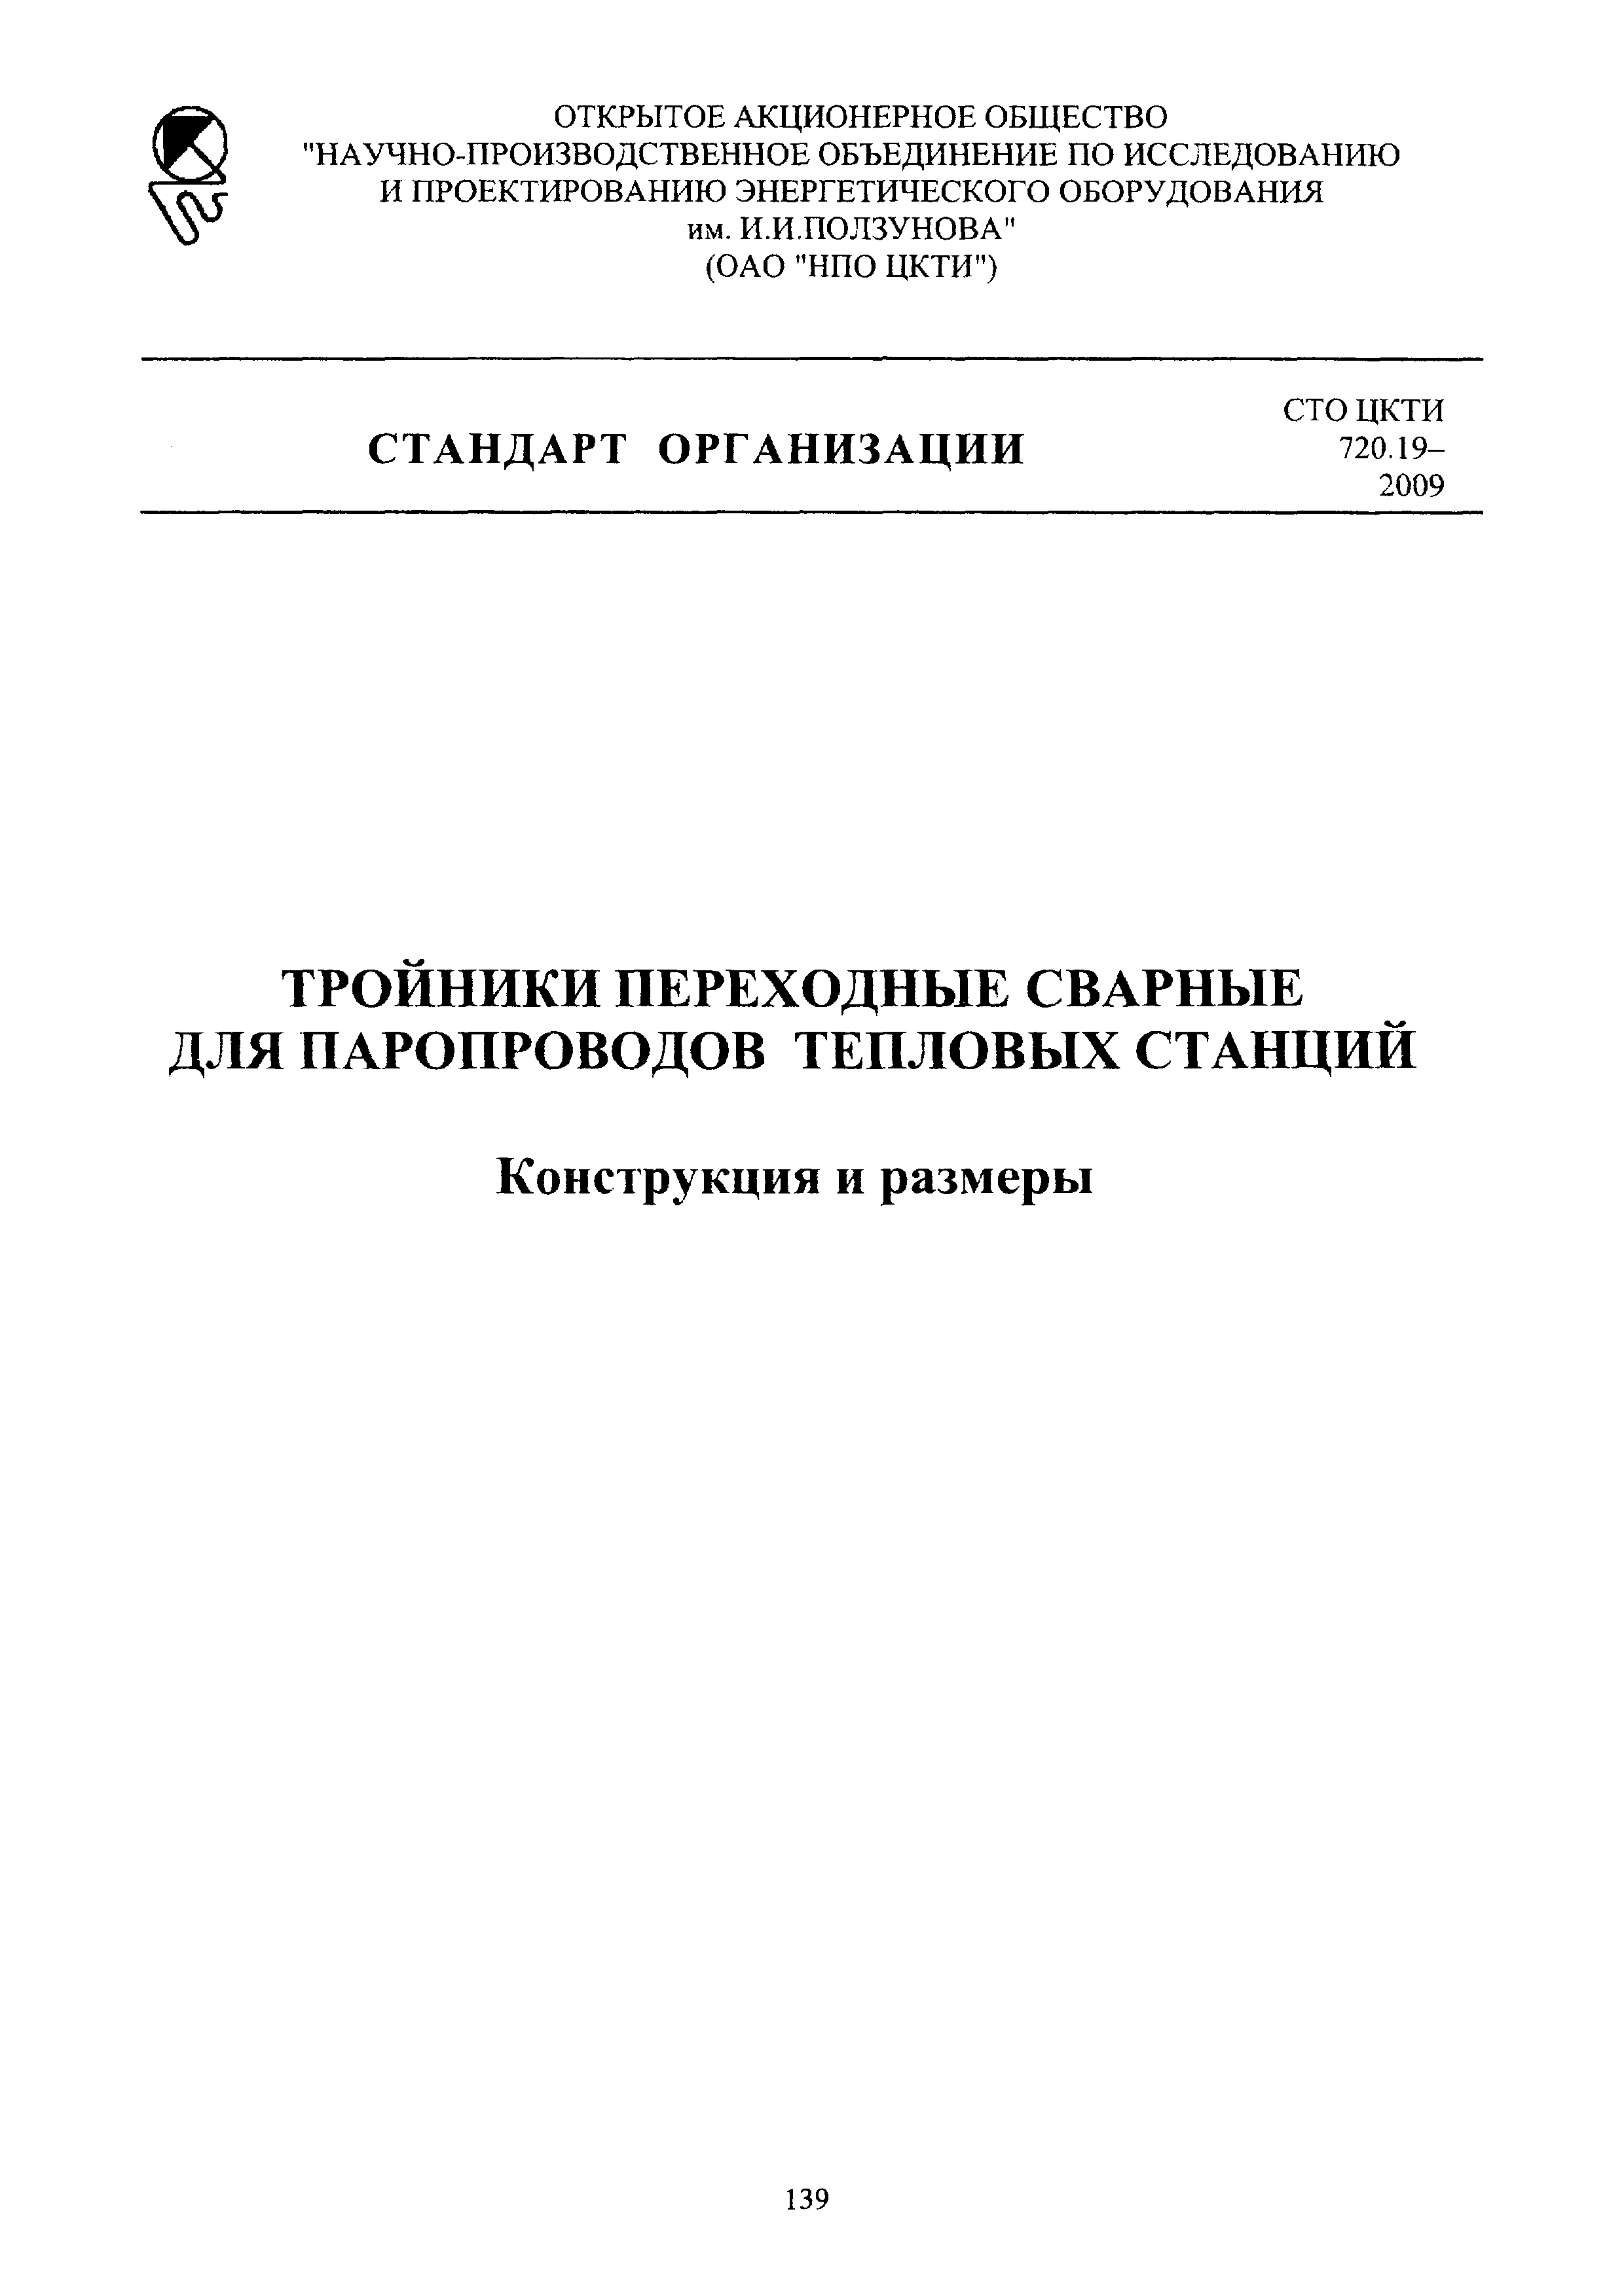 СТО ЦКТИ 720.19-2009